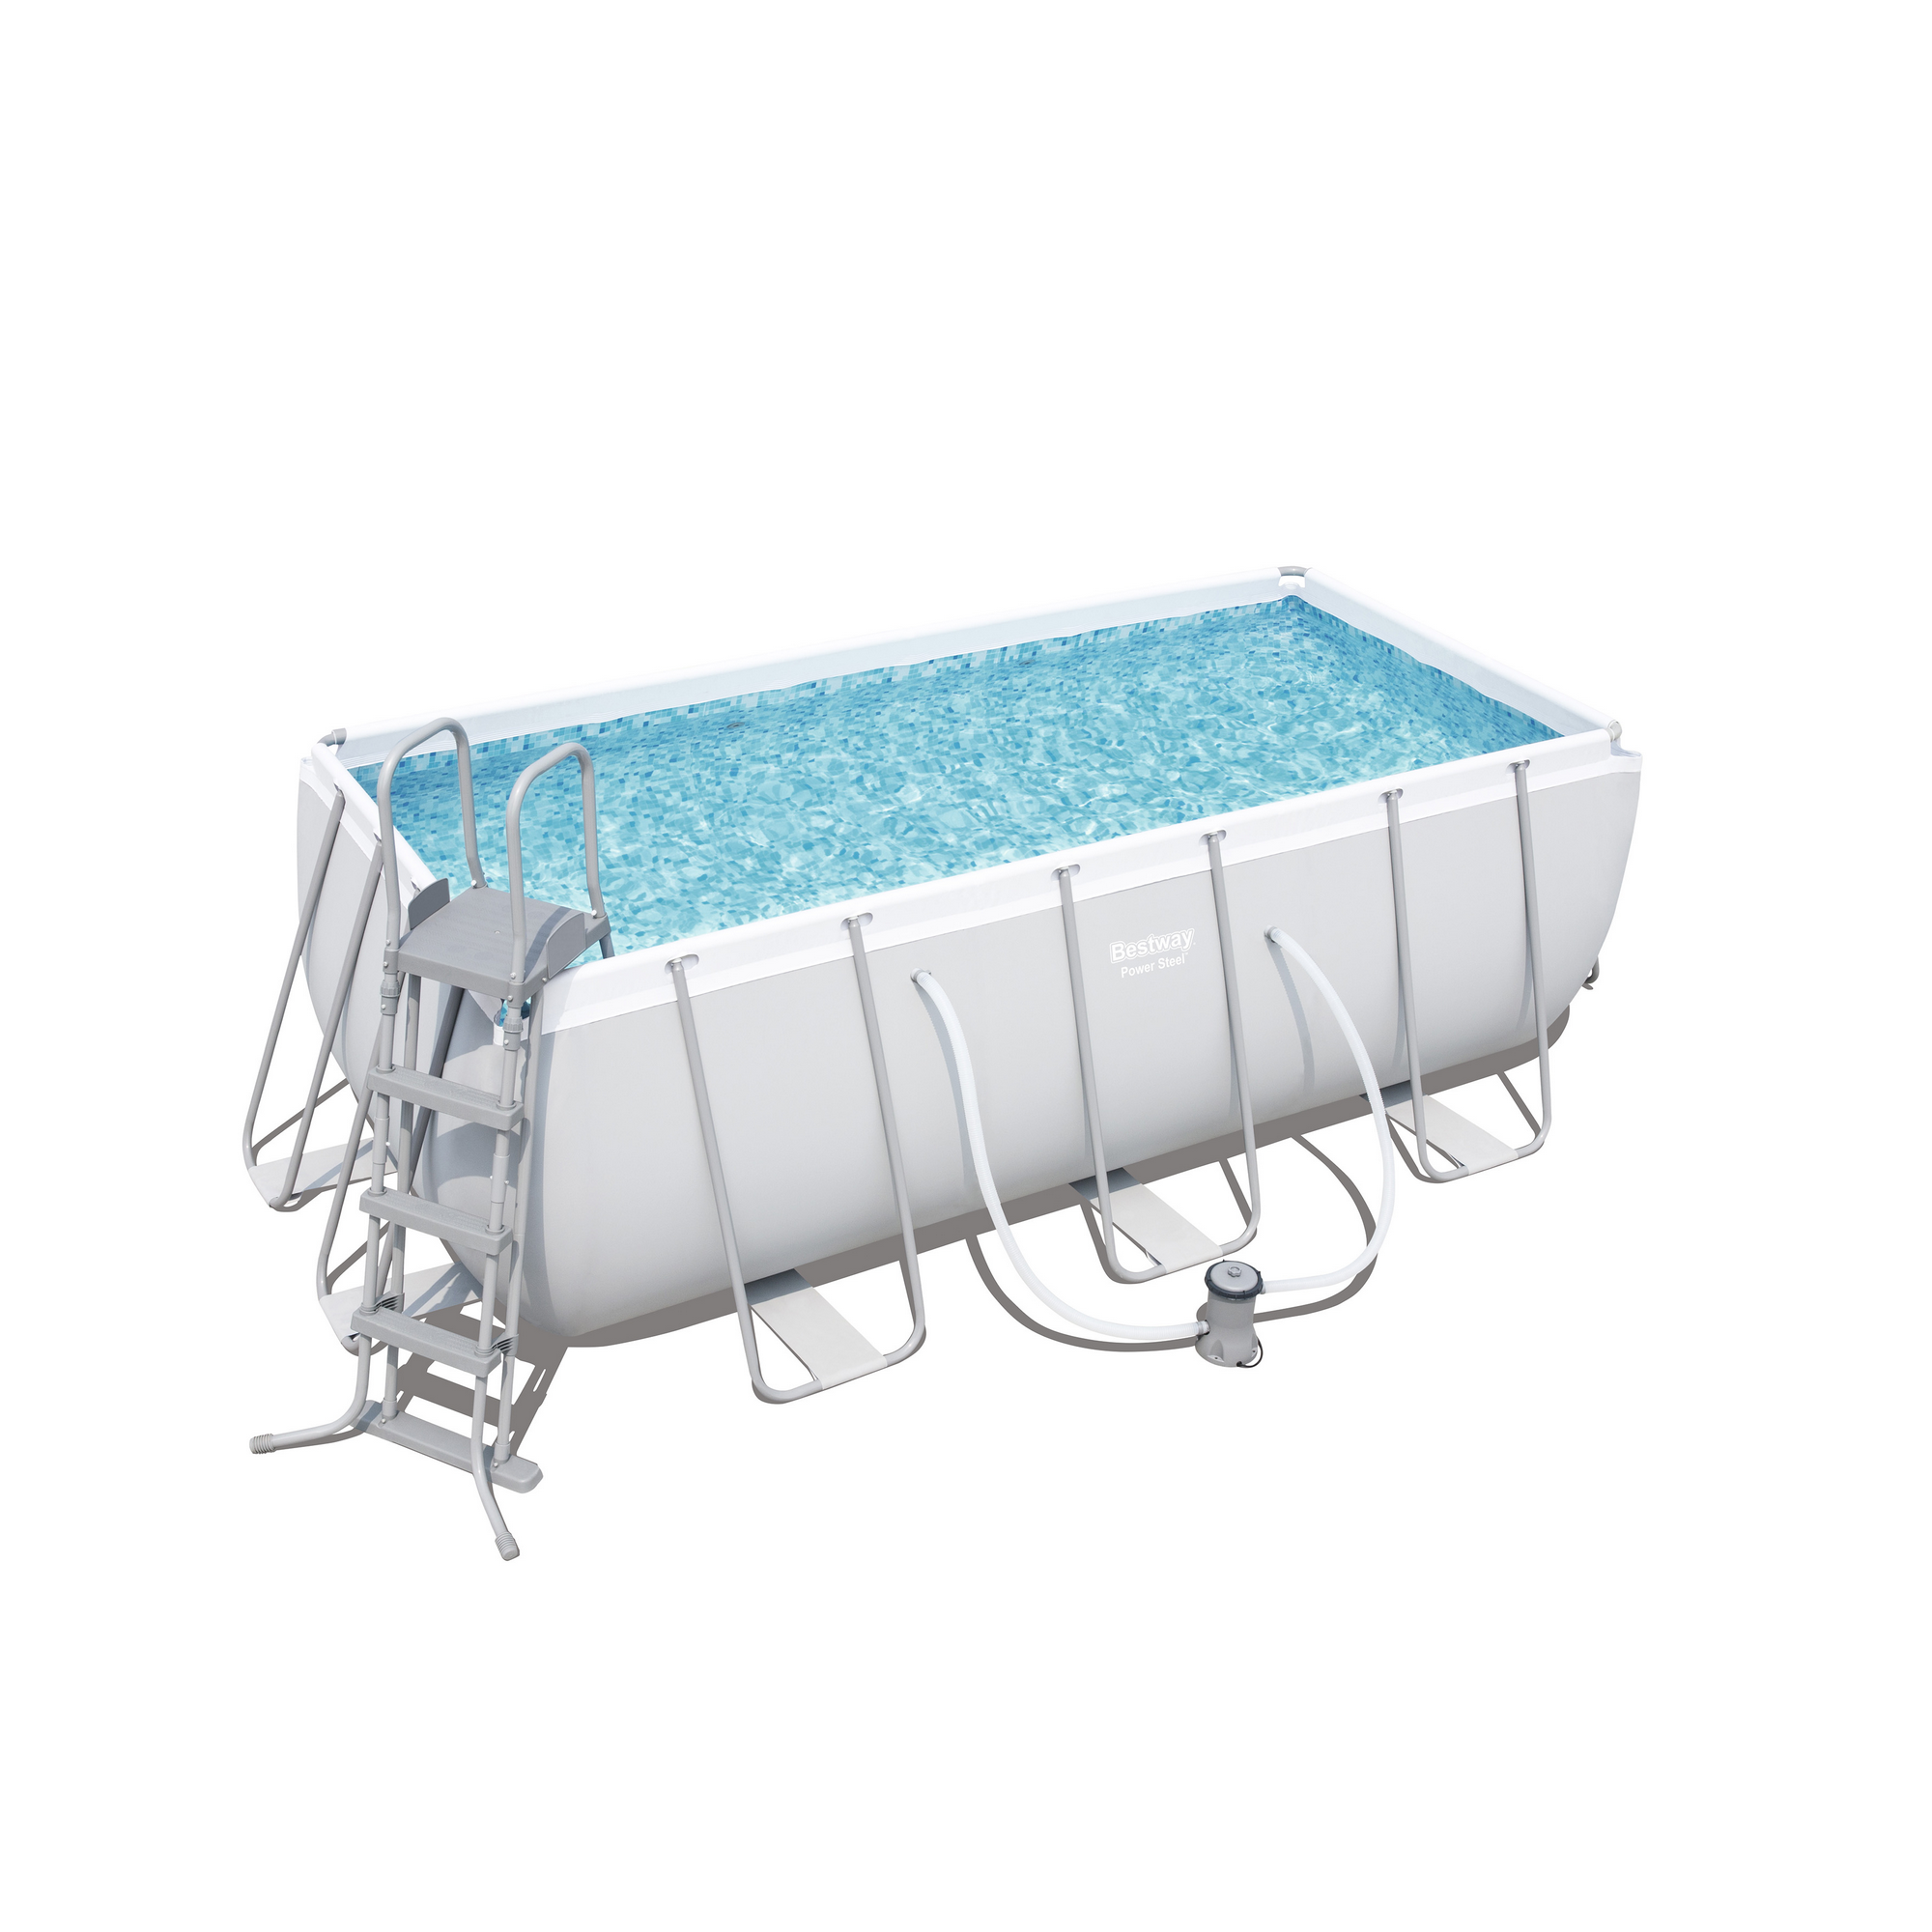 Frame-Pool-Set 'Power Steel' 412 x 201 x 122 cm mit Filterpumpe und Sicherheitsleiter + product picture